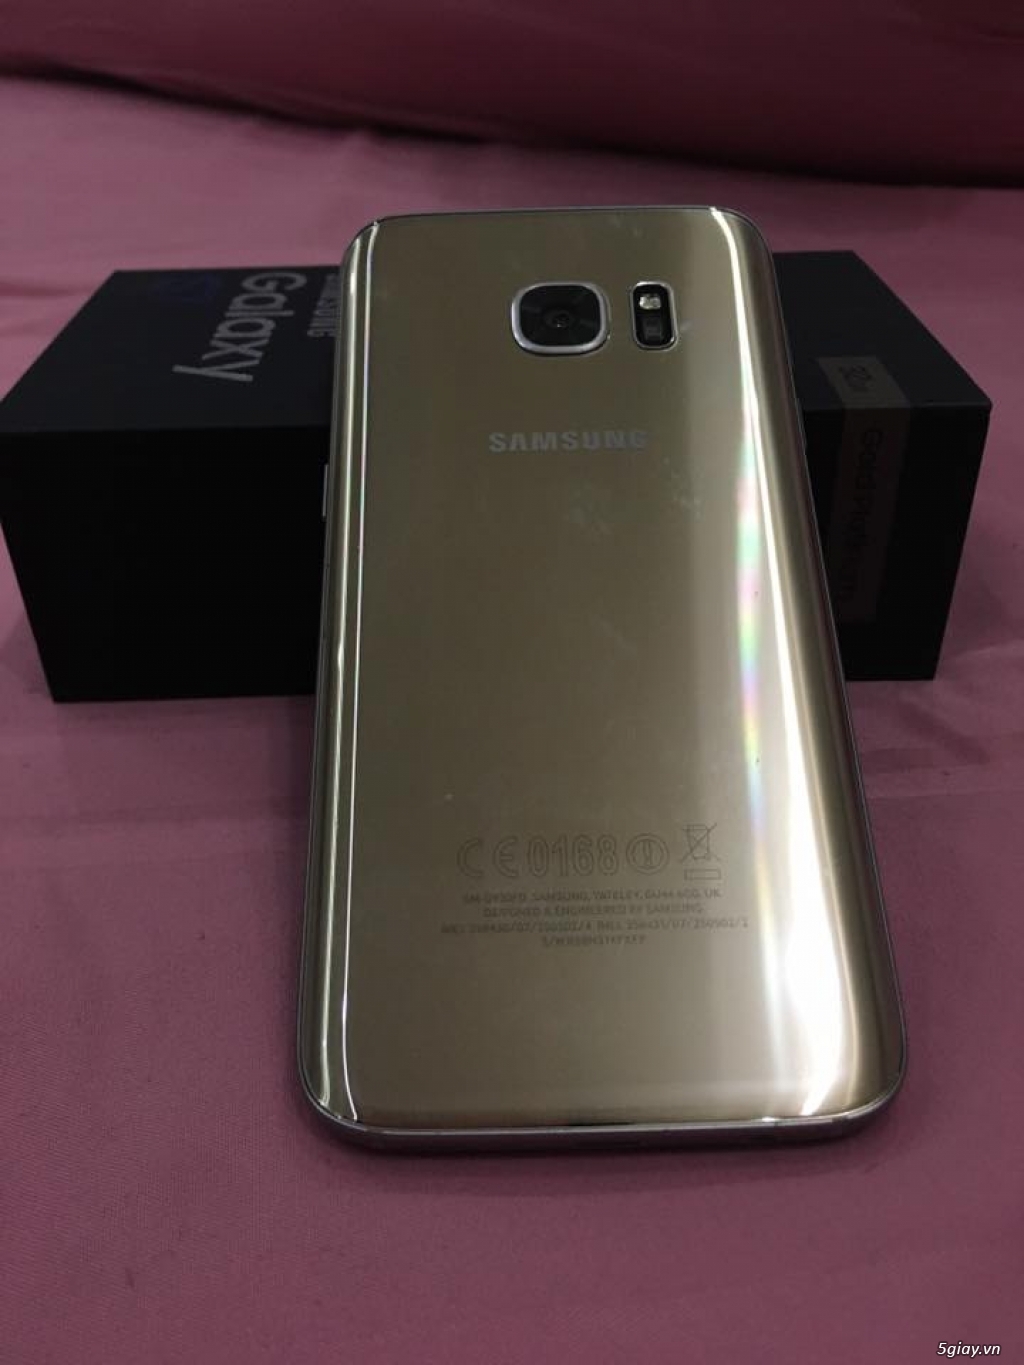 Samsung Galaxy S7 Gold 32Gb 2 Sim hàng chính hãng Samsung VN Like New 99% - 4